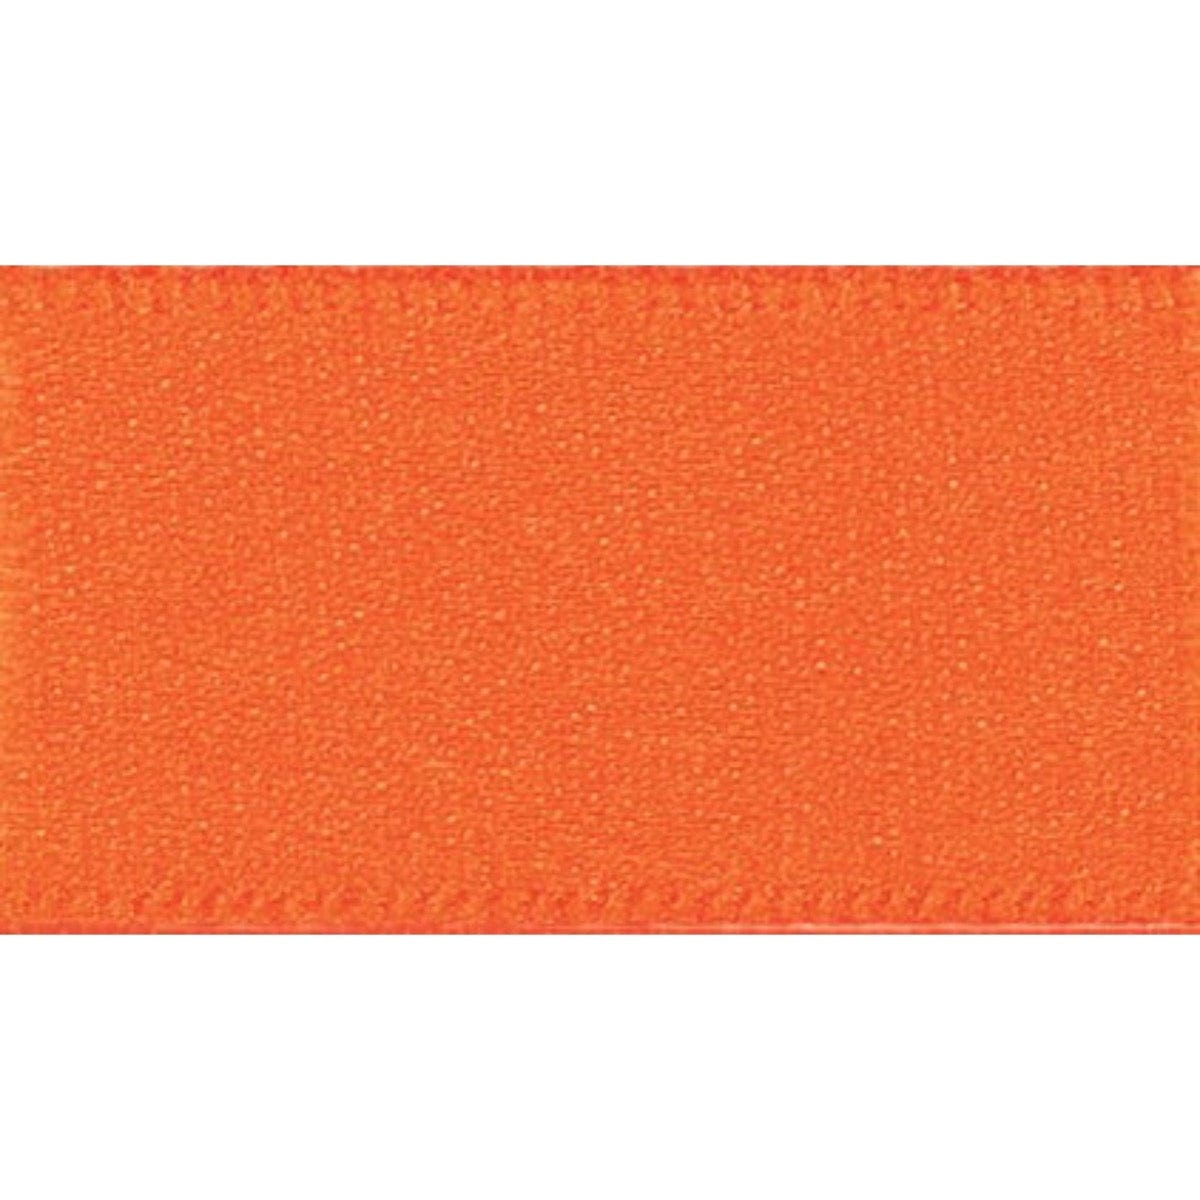 Double Faced Satin Ribbon: Orange Delight: 10mm Wide. Price per metre.